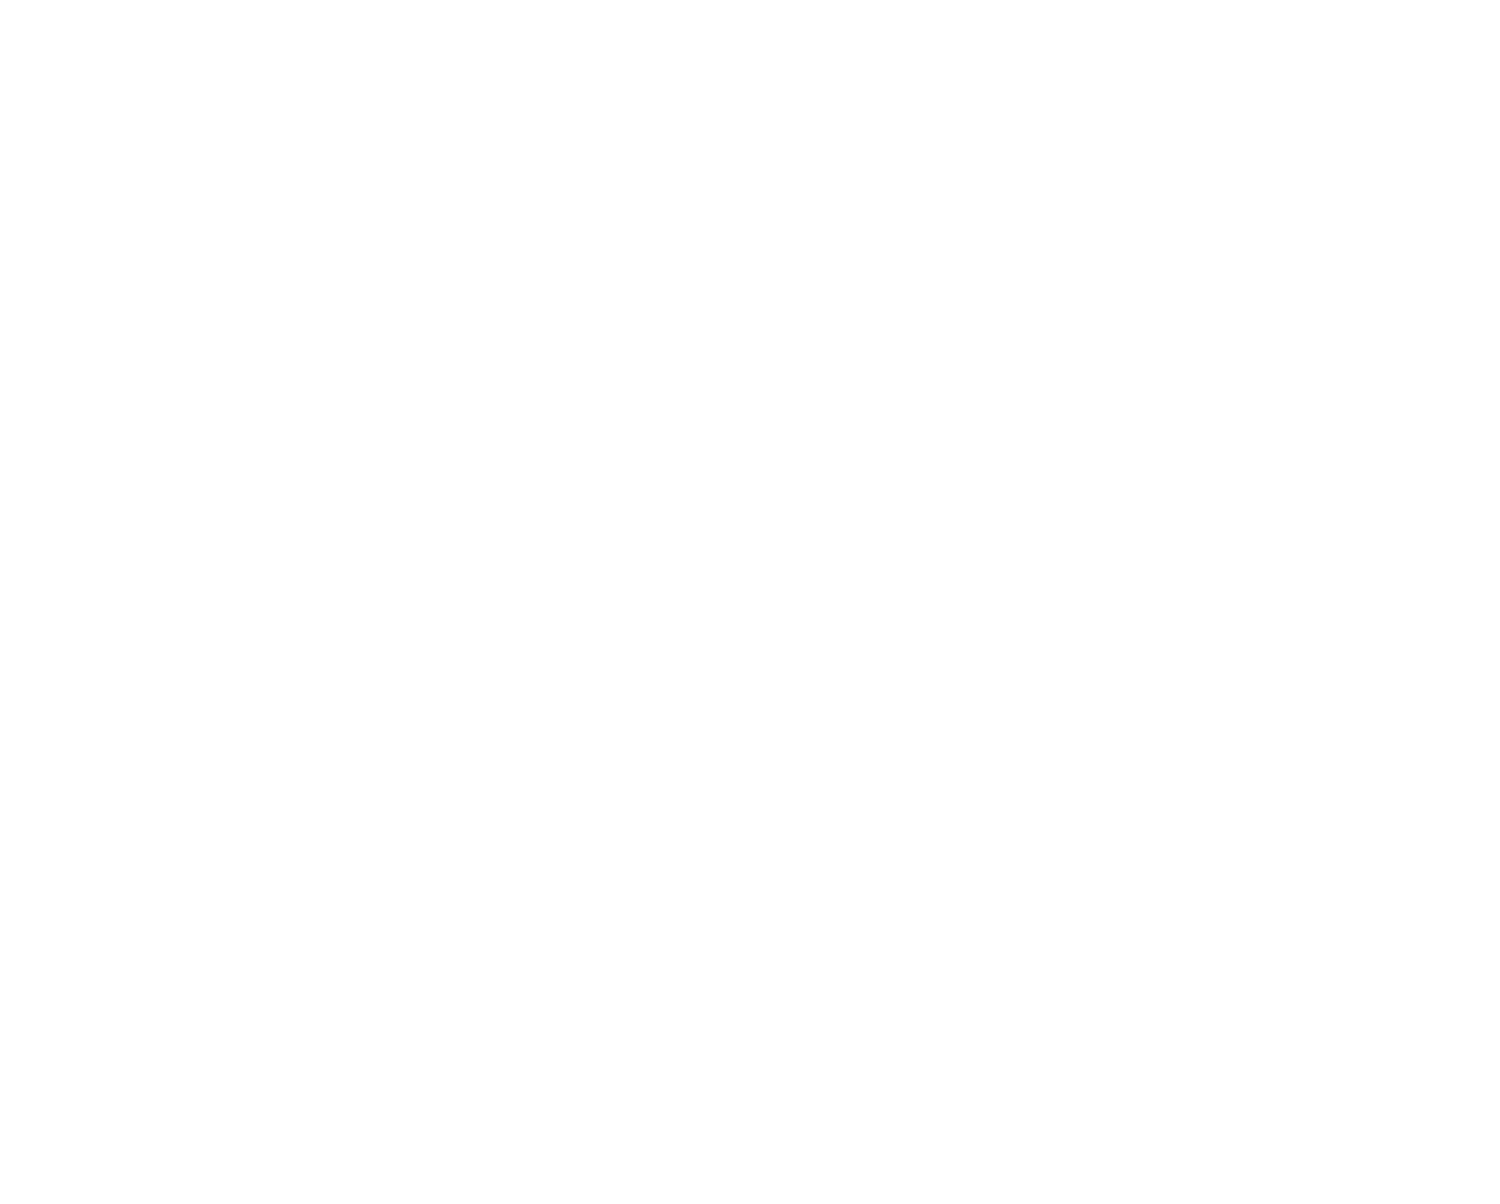 Rejoice Chiropractic